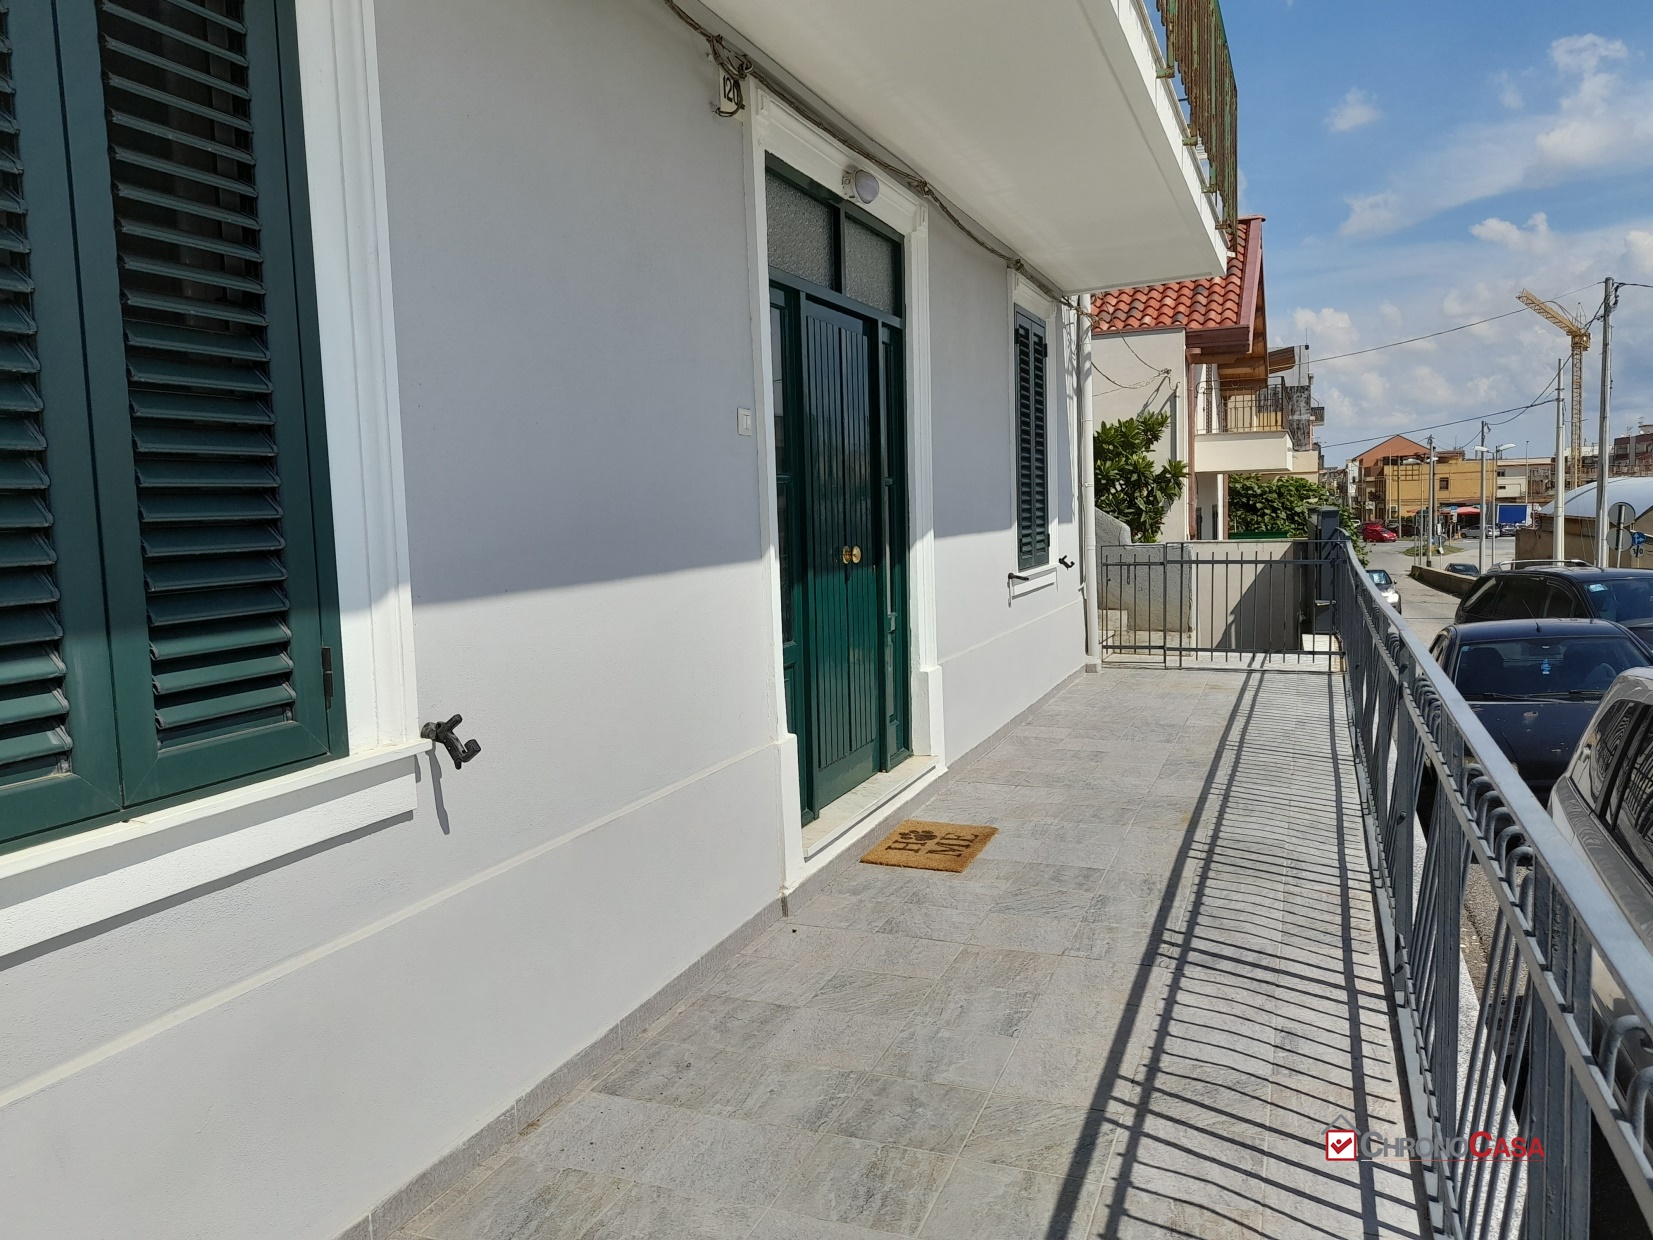 Villa in affitto a Messina, 4 locali, prezzo € 600 | PortaleAgenzieImmobiliari.it